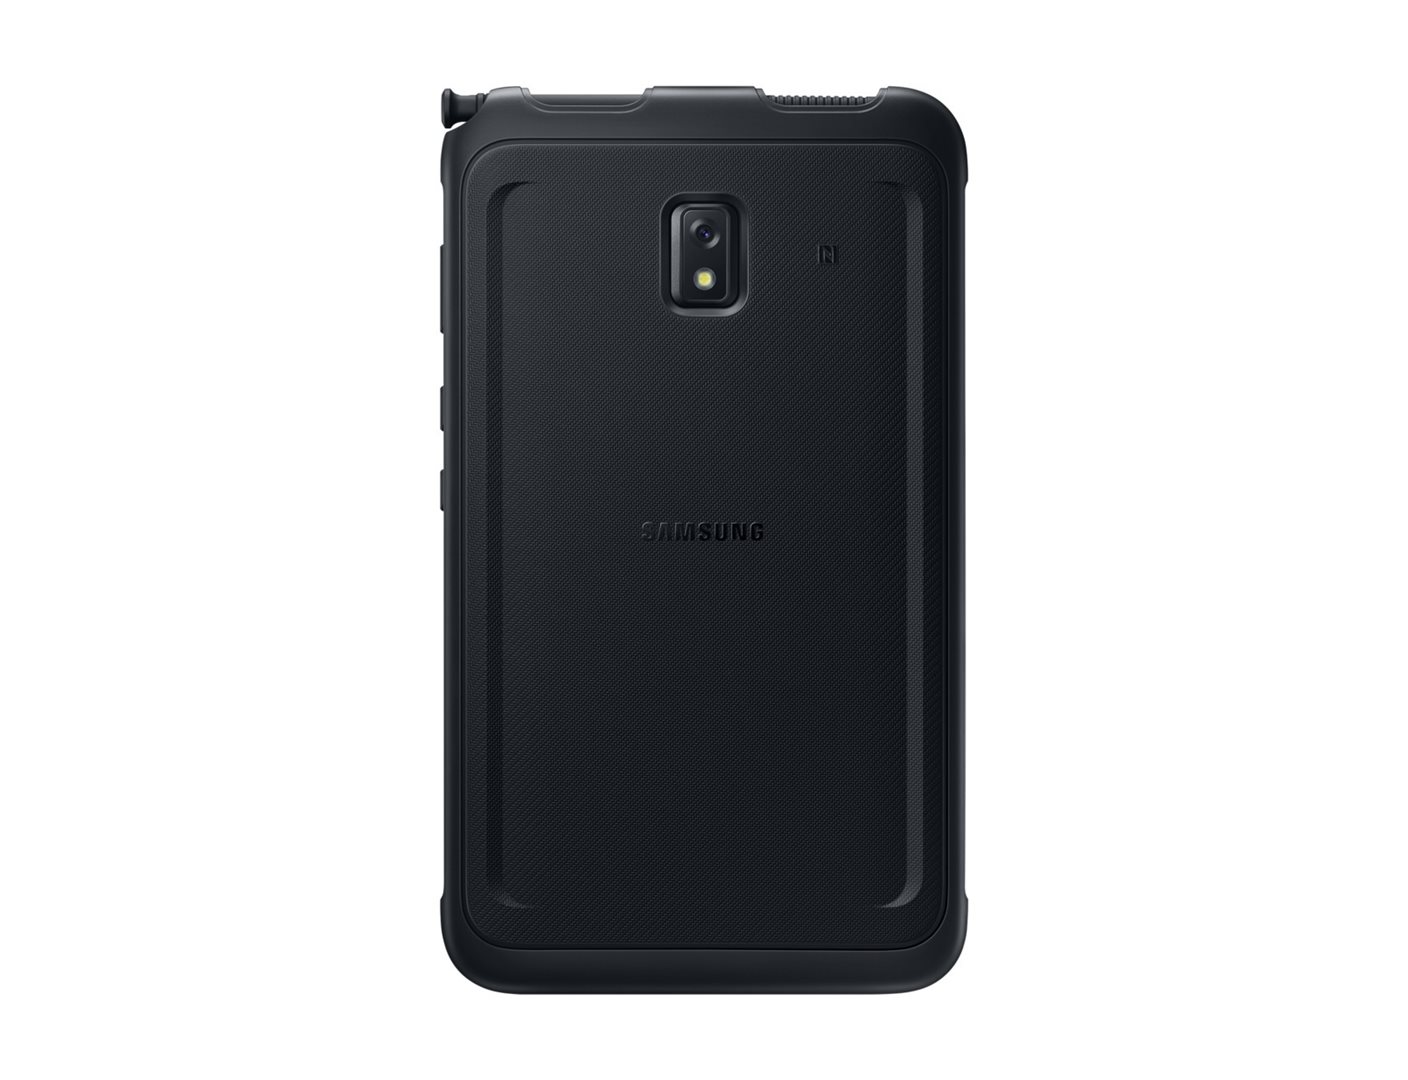 Samsung Galaxy Tab Active3 Wifi černá